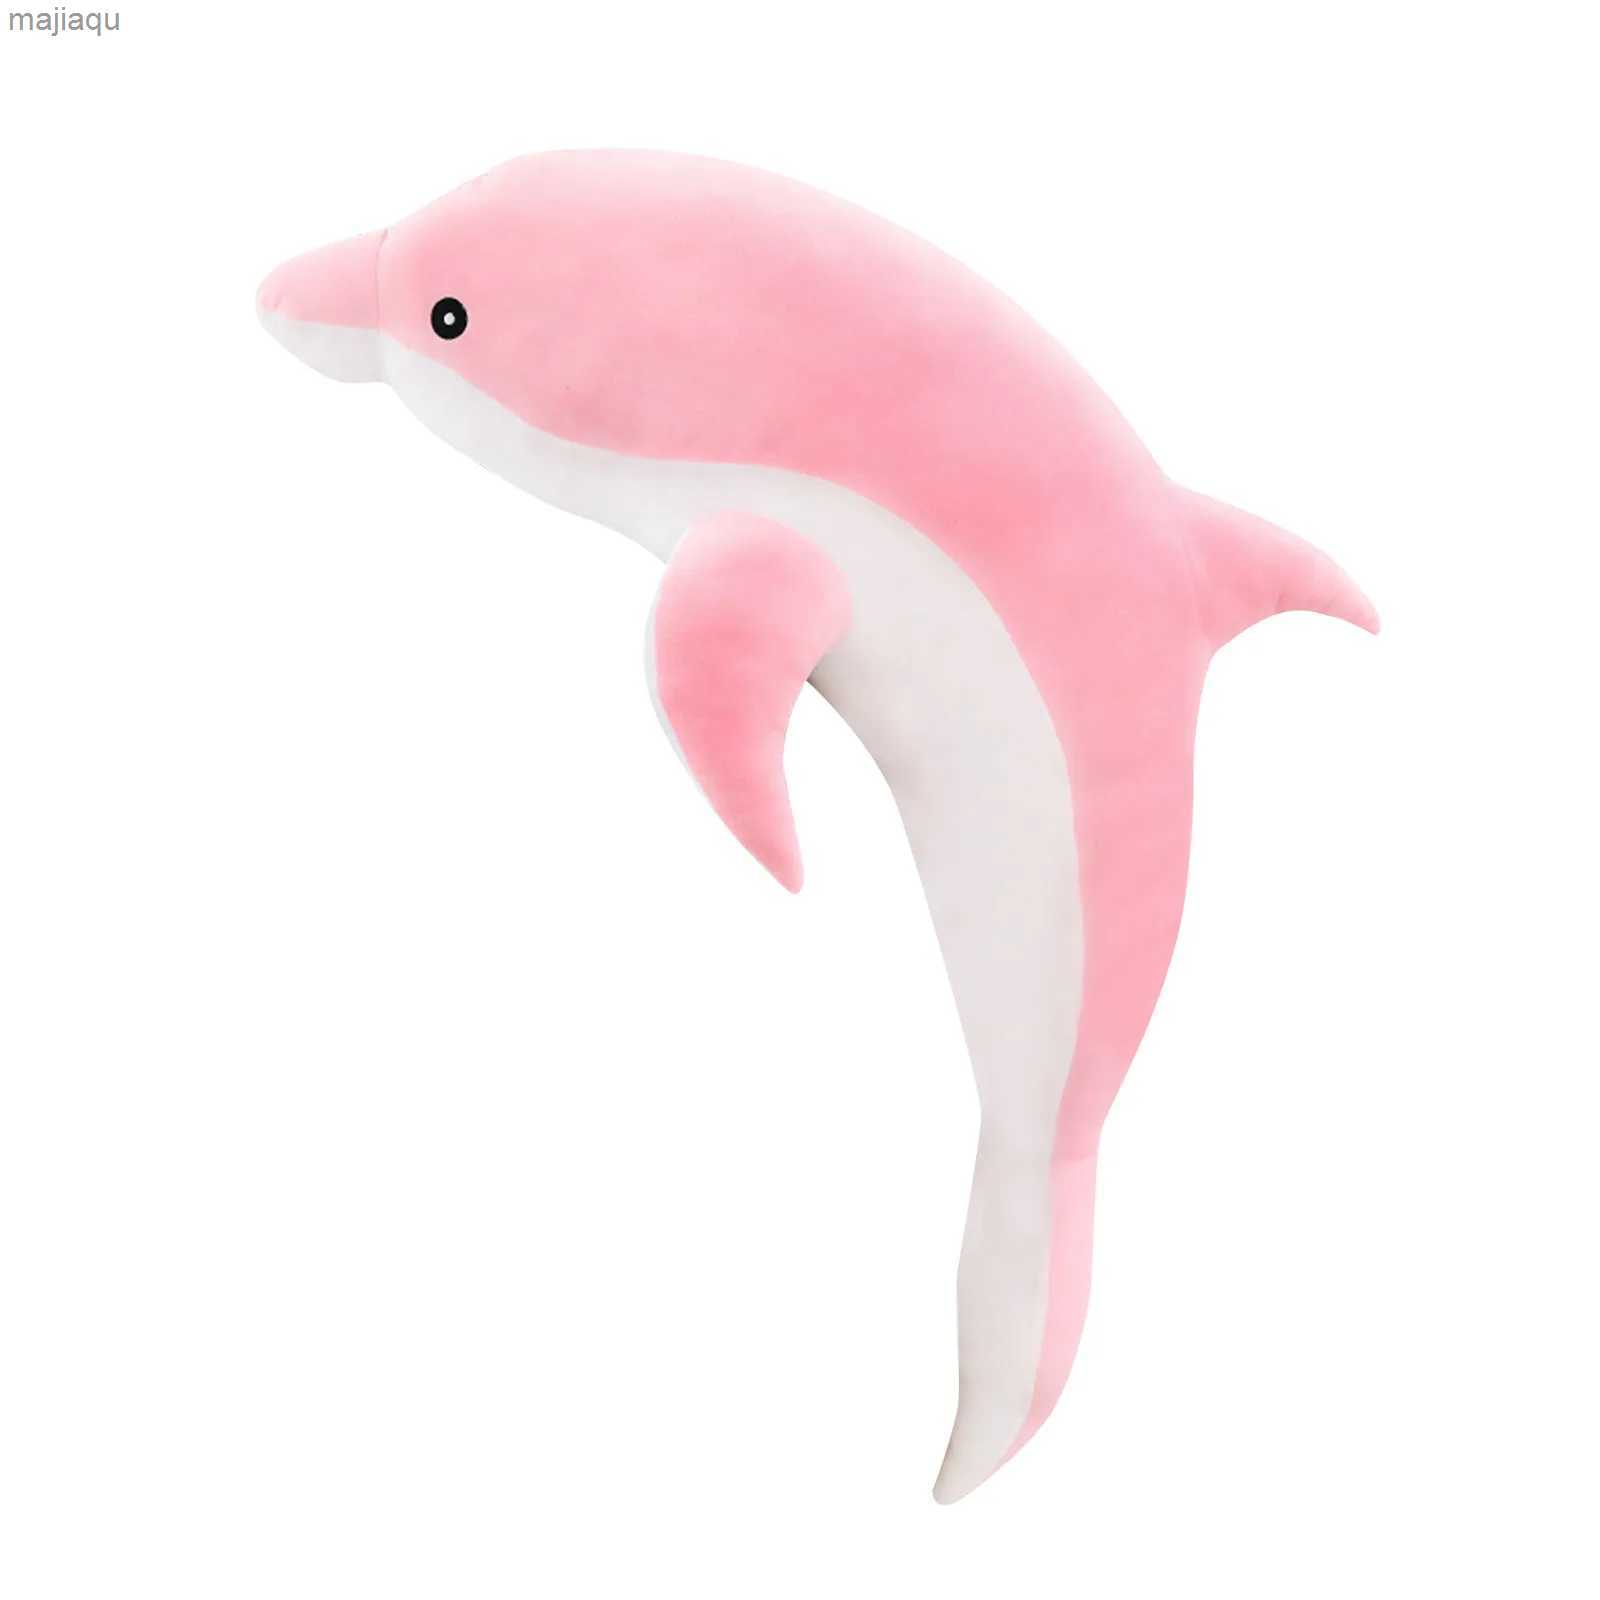 Plüschpuppen 30 cm Delphin Doll Kissen Plüsch Spielzeug niedliche Marine Animal Raillierpuppe Kinderpullen 2404